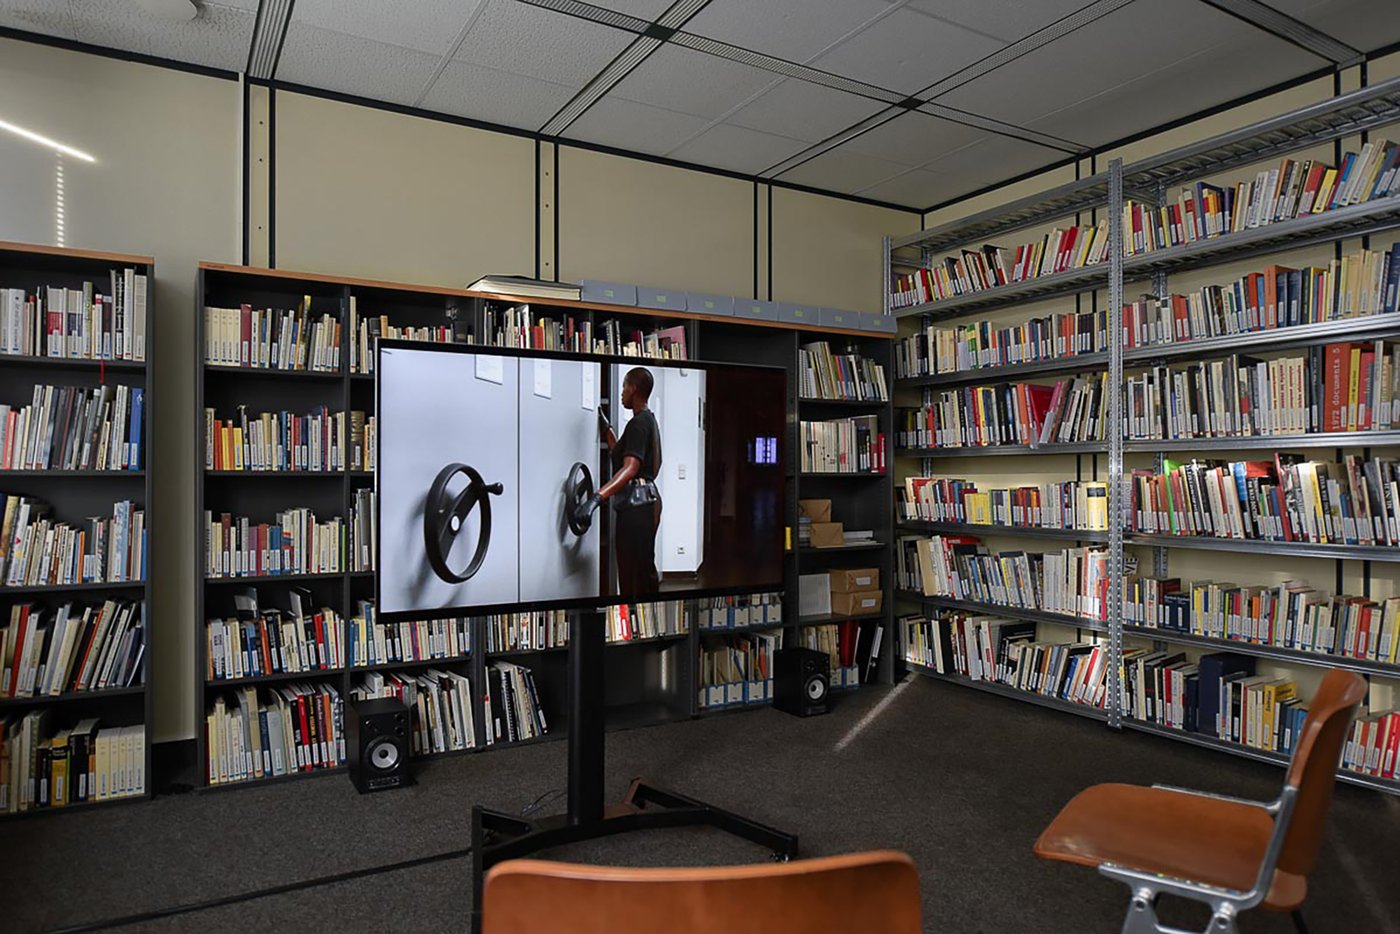 Ansicht der Ausstellung im Archivraum. Im Hintergrund Bücherregale, davor ein freistehender Monitor auf dem ein Video läuft. Auf dem Standbild sieht man eine Person, die bedient das Drehrad eines Archivregals und schaut in den Spalt zwischen zwei Regalen.